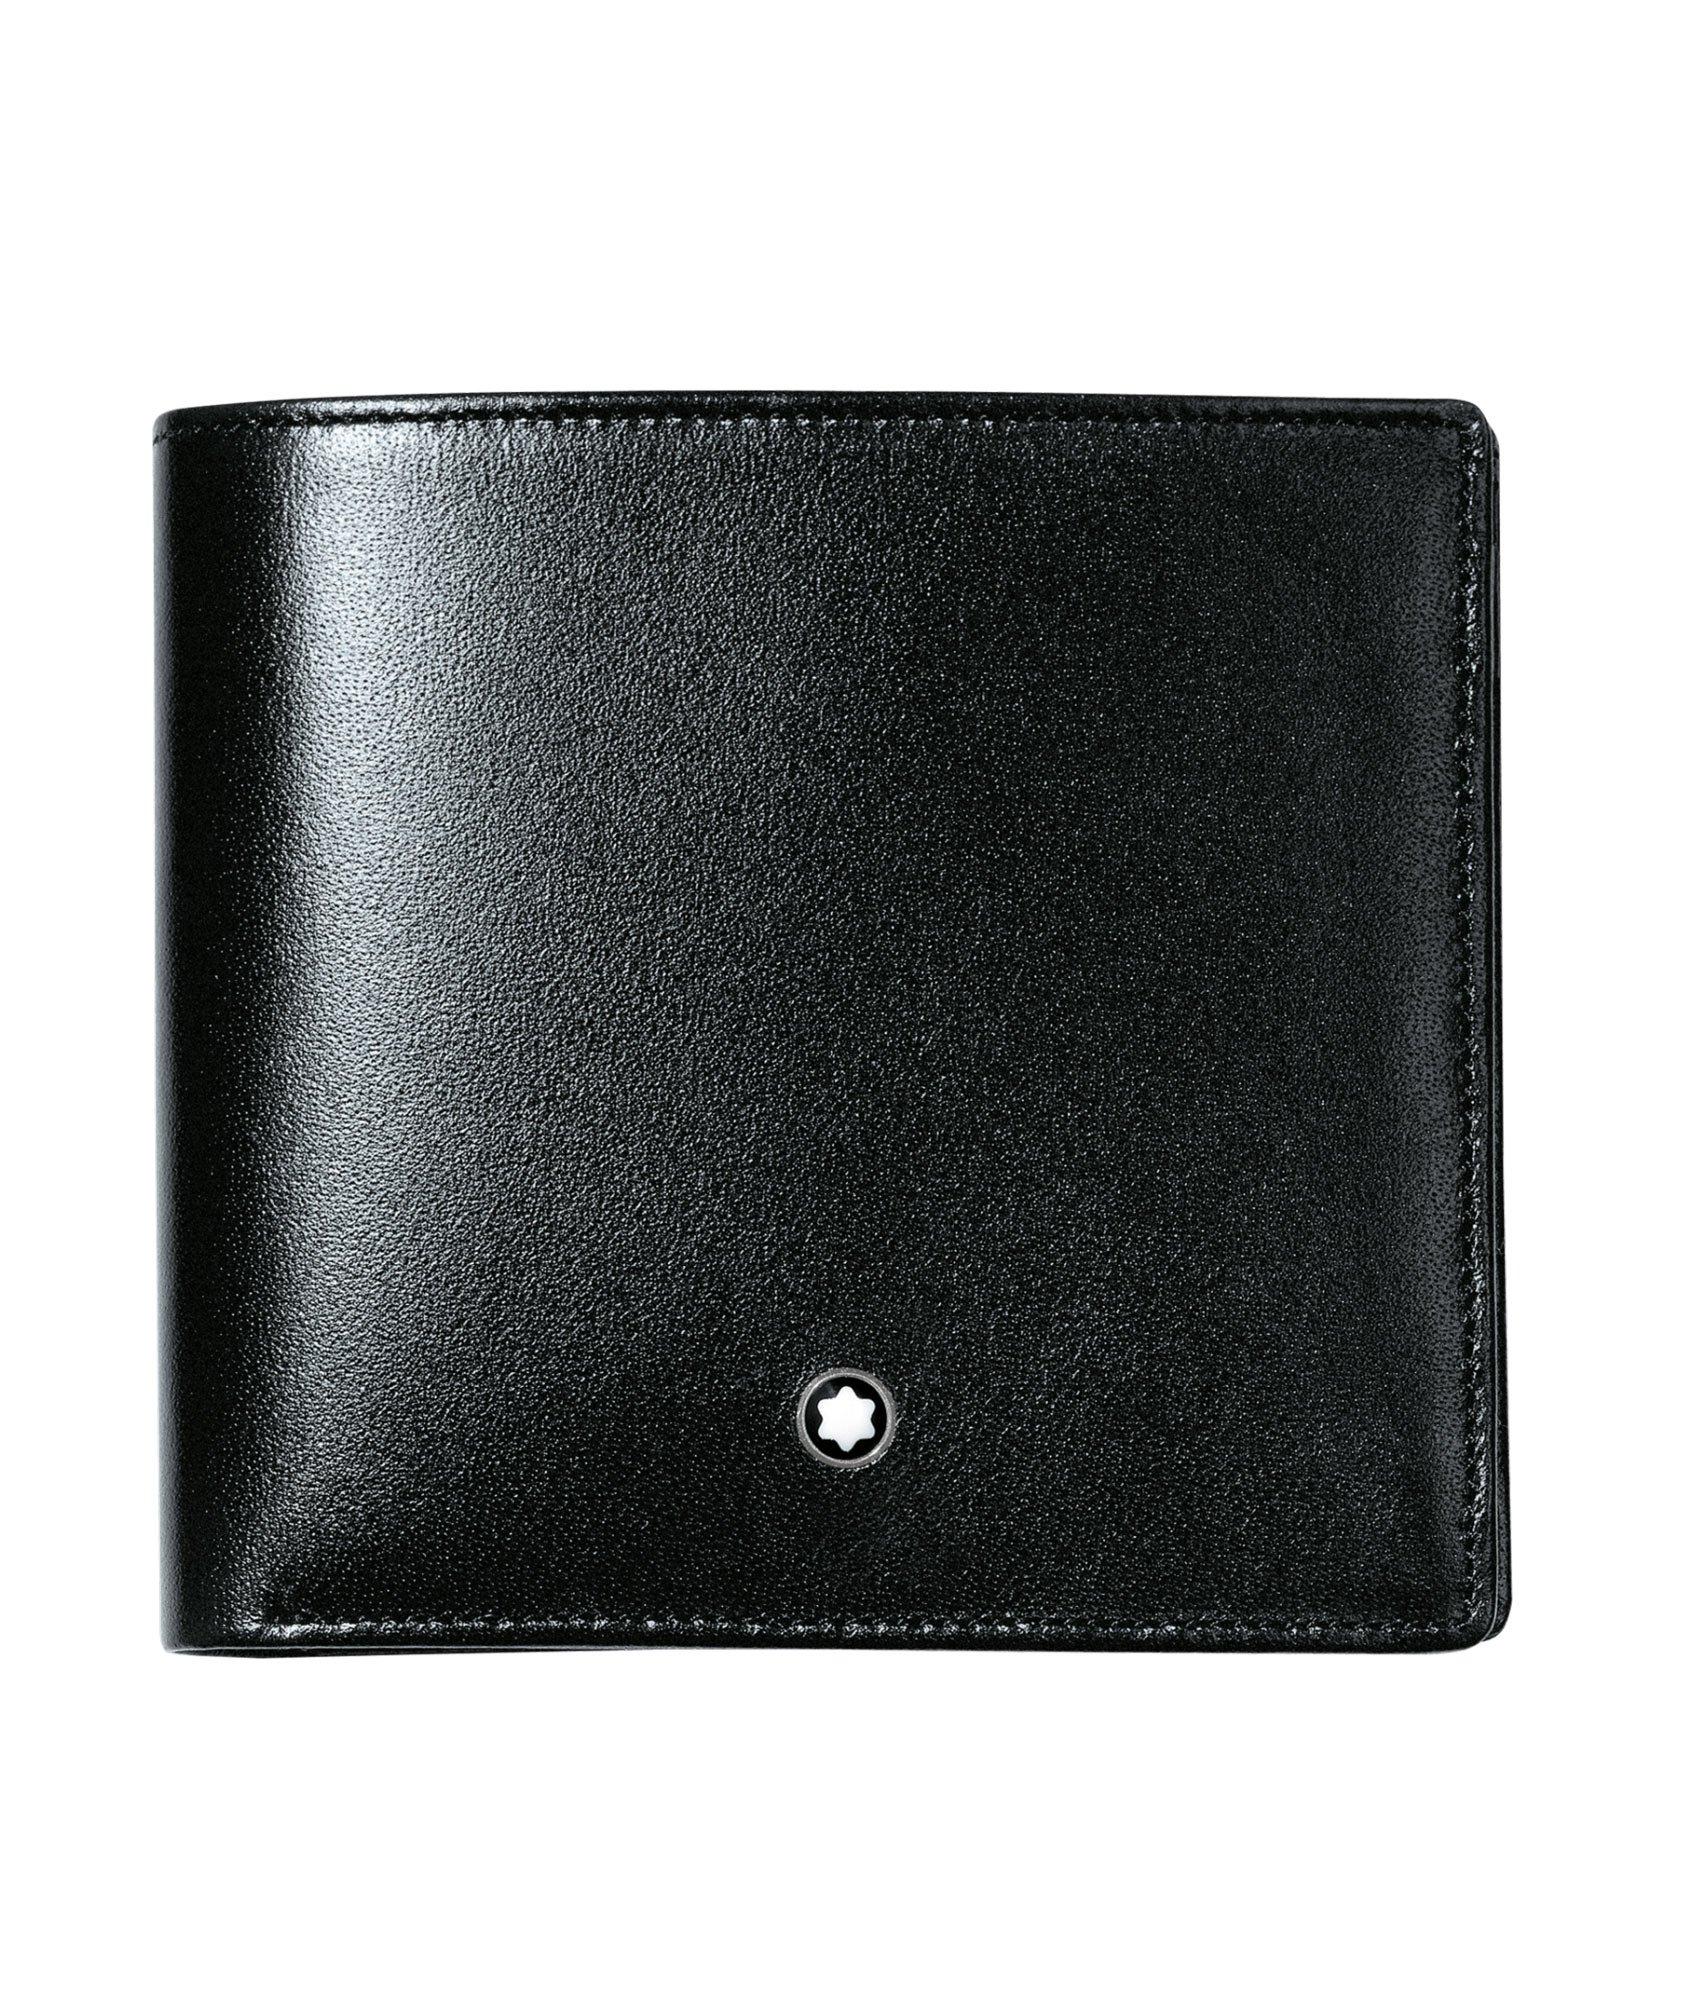 Meisterstück Leather Billfold Wallet image 0